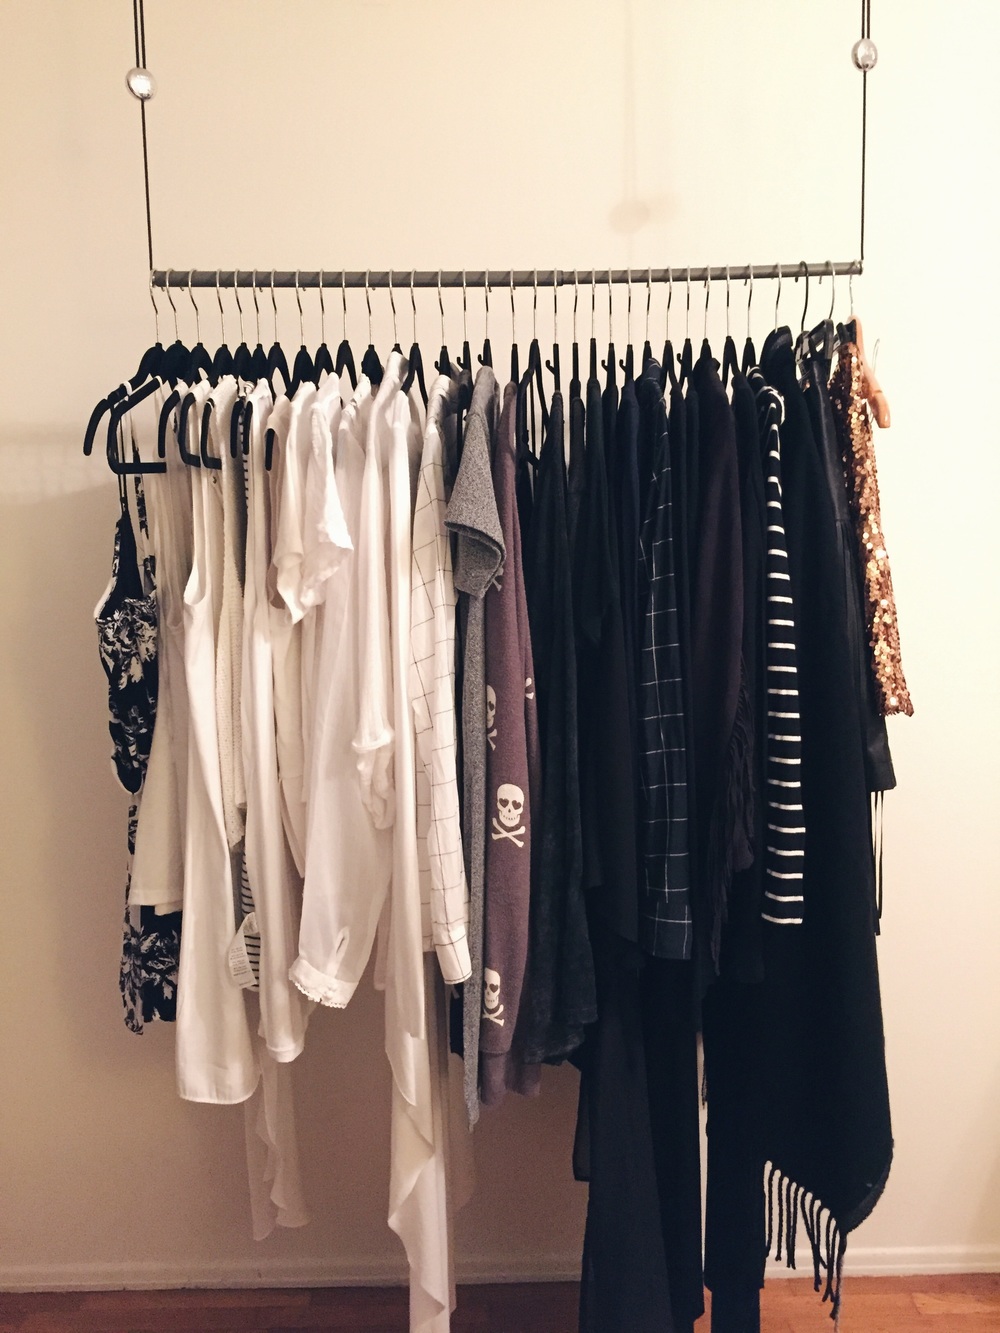 Closet #4 - Essentials - hanging in my room